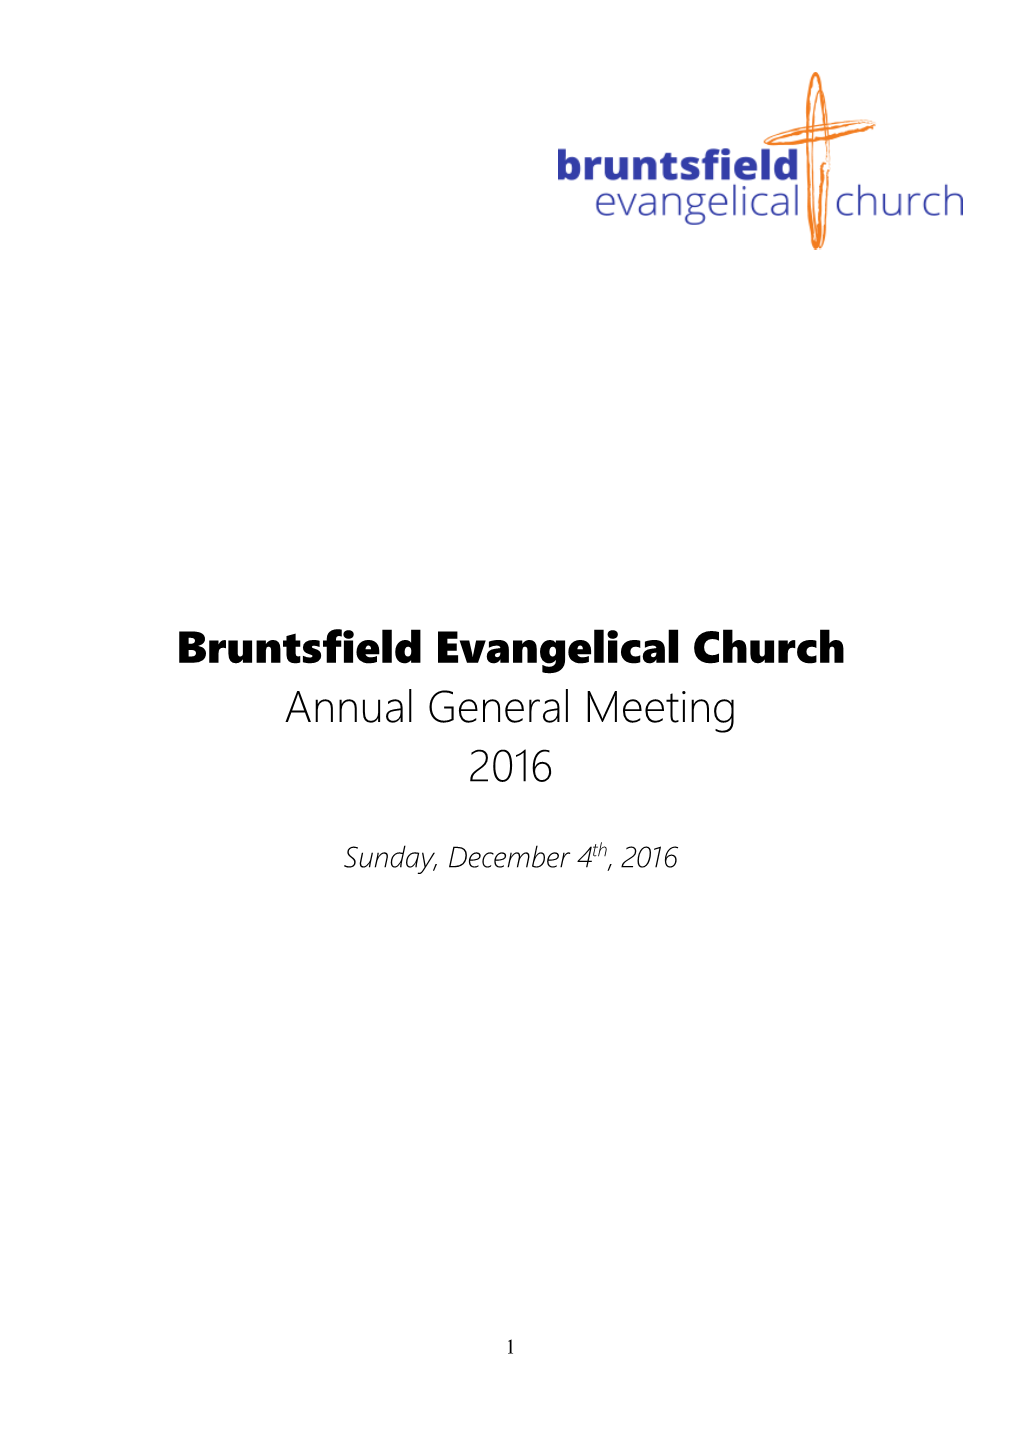 Bruntsfield Evangelical Church Annual General Meeting 2016